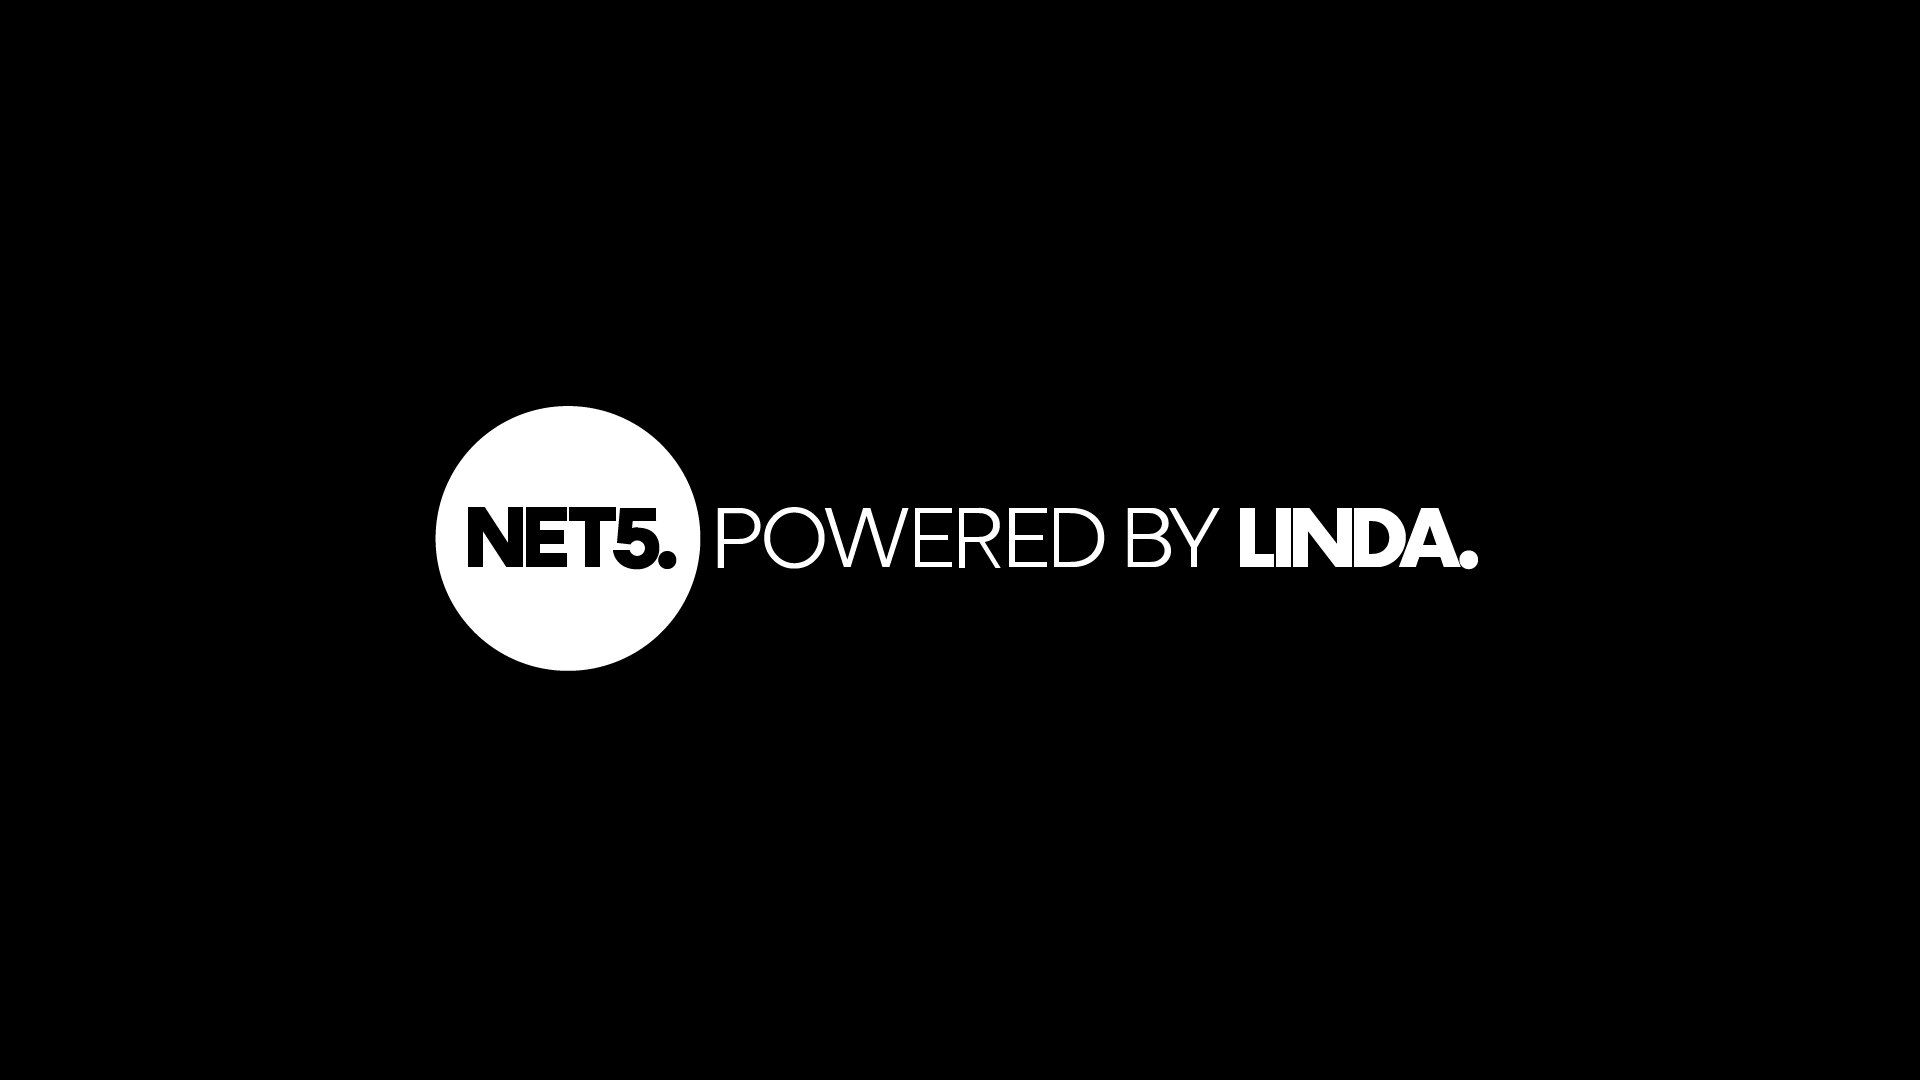 CapeRock steekt 'Net5 powered by Linda' in het nieuw